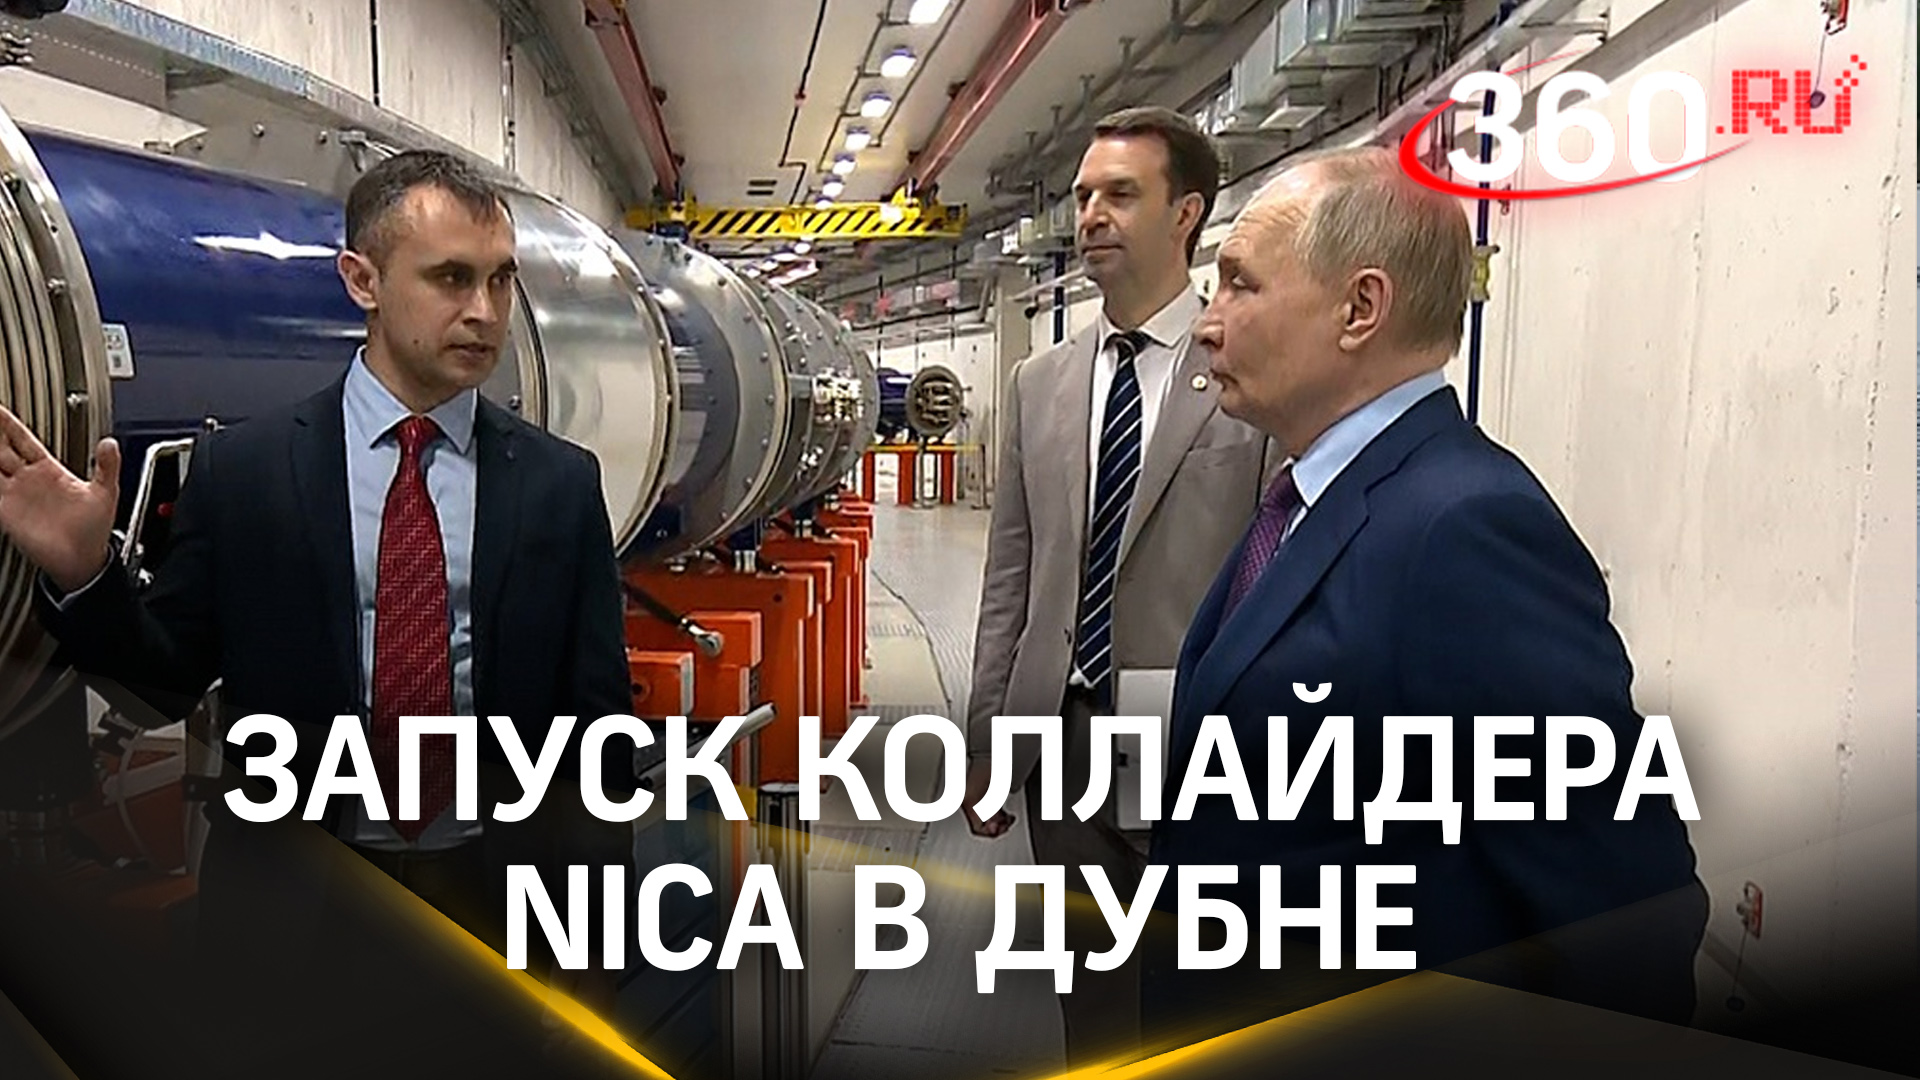 Путин дал старт работам по запуску коллайдера NICA в подмосковной Дубне